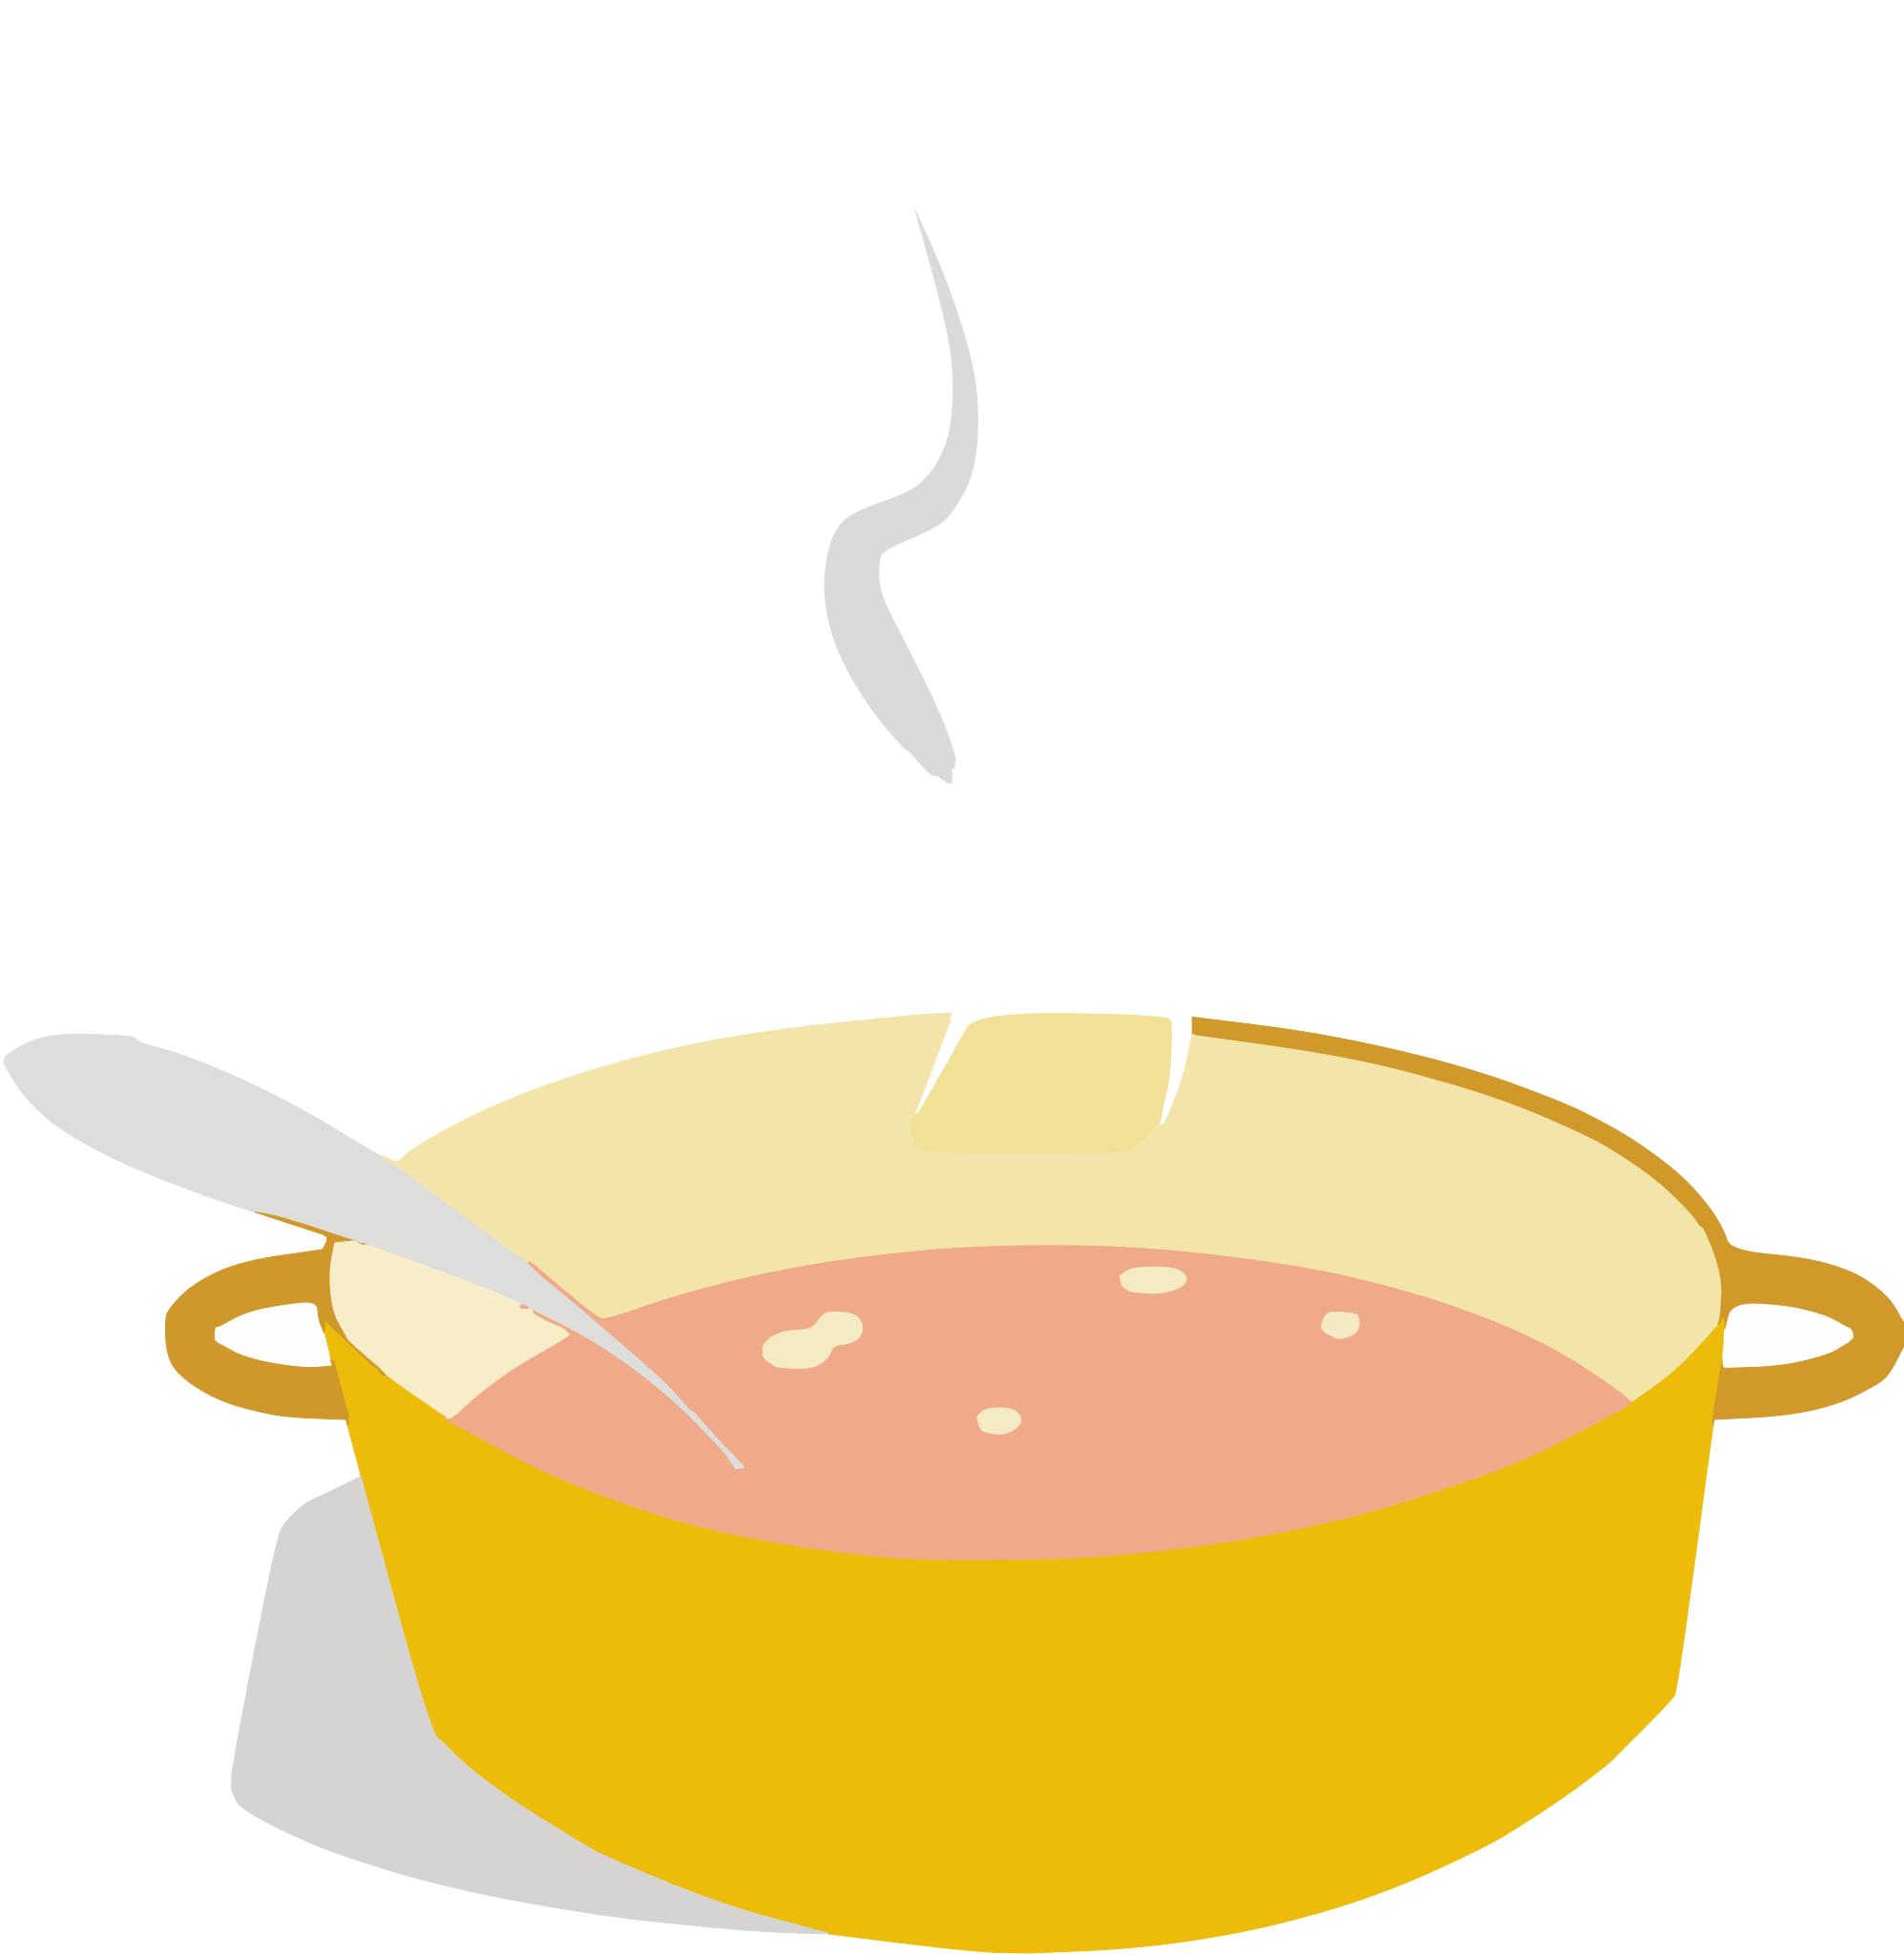 Кастрюля с супом для детей